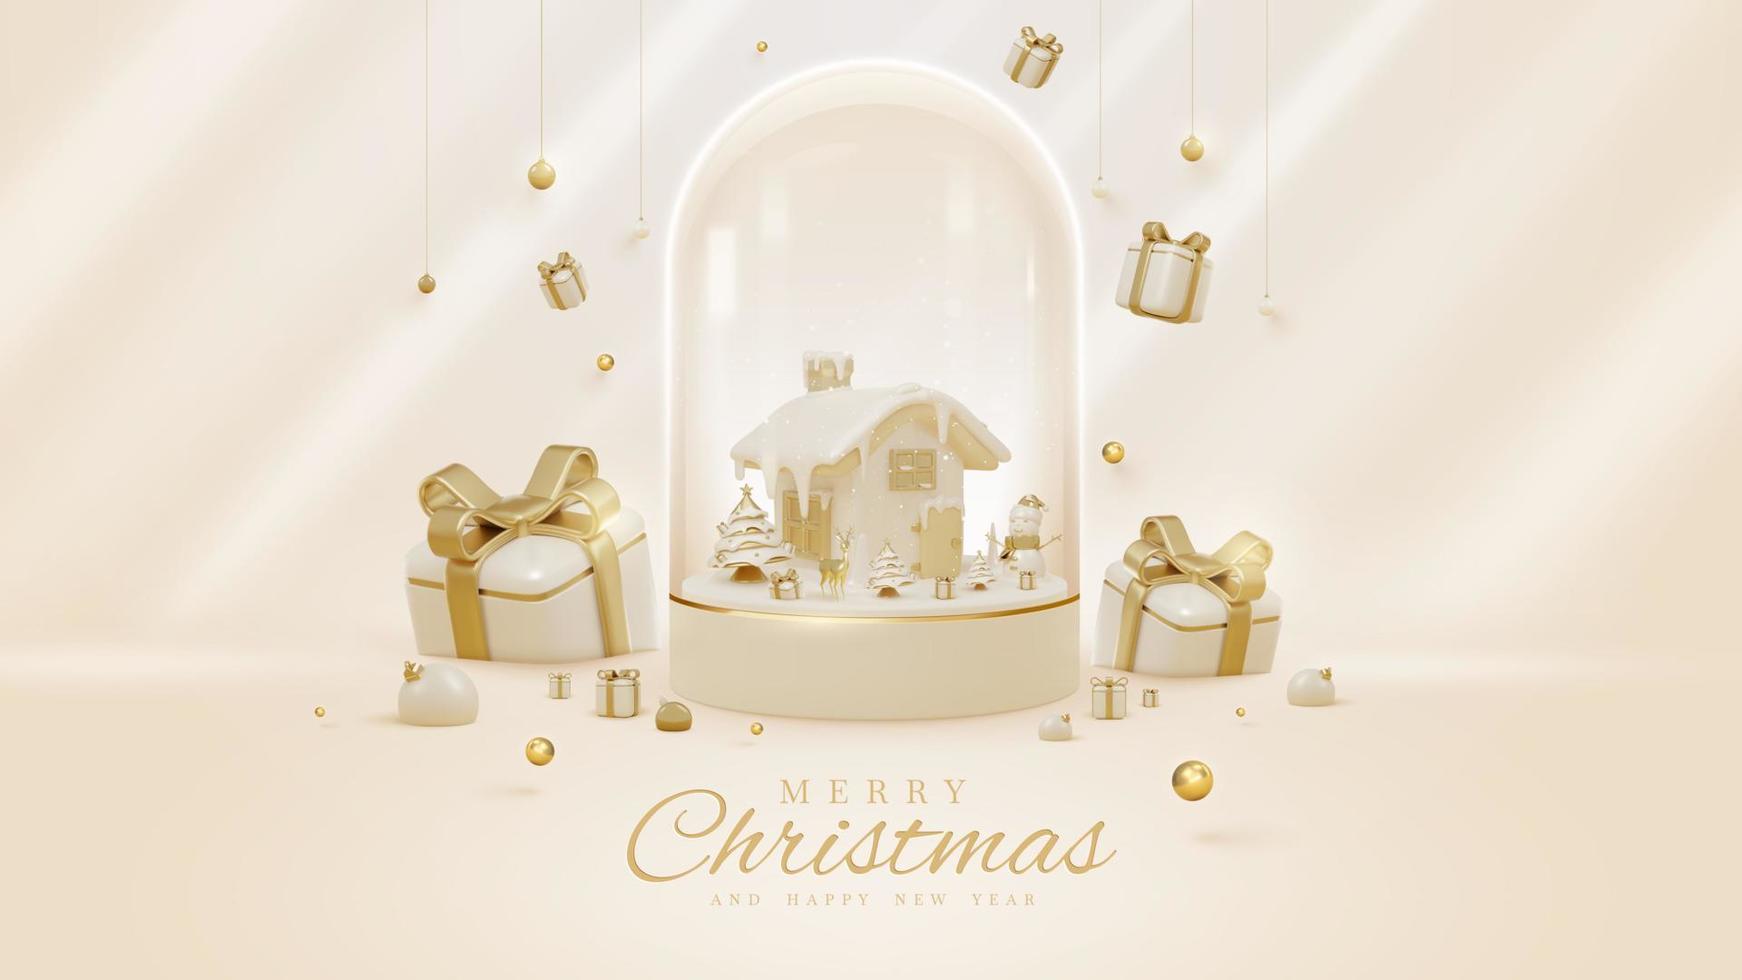 lyx stil bakgrund med 3d realistisk jul ornament i glas flaska på podium med snö element och glitter ljus effekt dekorationer och bokeh. vektor illustration.